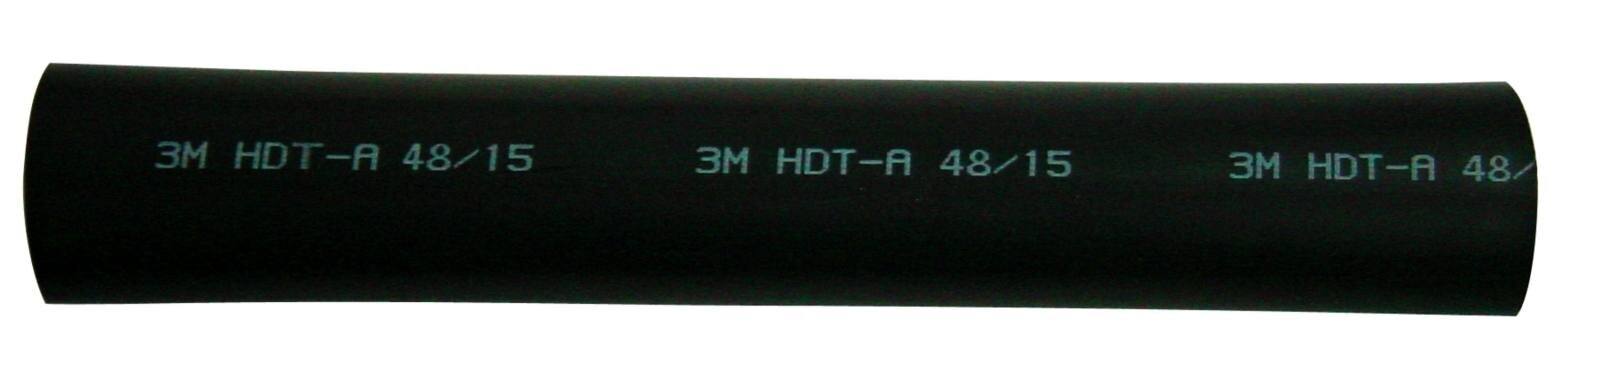  3M HDT-A Paksuseinäinen lämpökutisteputki liimalla, musta, 19/6 mm, 1 m